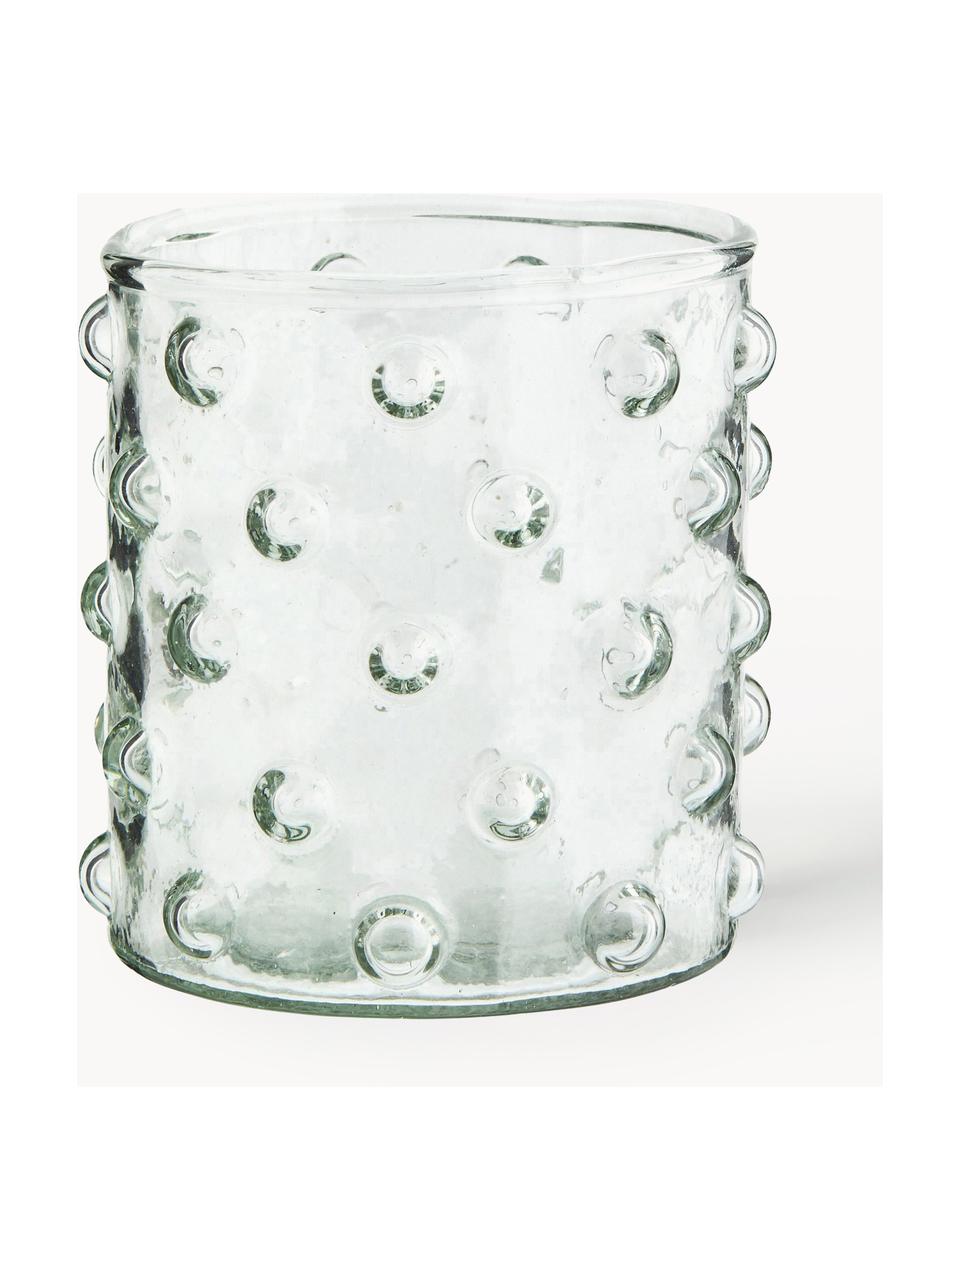 Bicchieri in vetro soffiato con motivo in rilievo Spike 6 pz, Vetro sodico-calcico soffiato

Grazie alla sua superficie liscia e non porosa, il vetro sodico-calcico è facile da pulire. Come altri tipi di vetro, è completamente riciclabile e contribuisce quindi a ridurre l'impatto ambientale. Tuttavia, va notato che è sensibile alle fluttuazioni di temperatura, quindi occorre prestare attenzione quando, ad esempio, si versano nel bicchiere liquidi molto caldi., Trasparente, Ø 8 x Alt. 9 cm